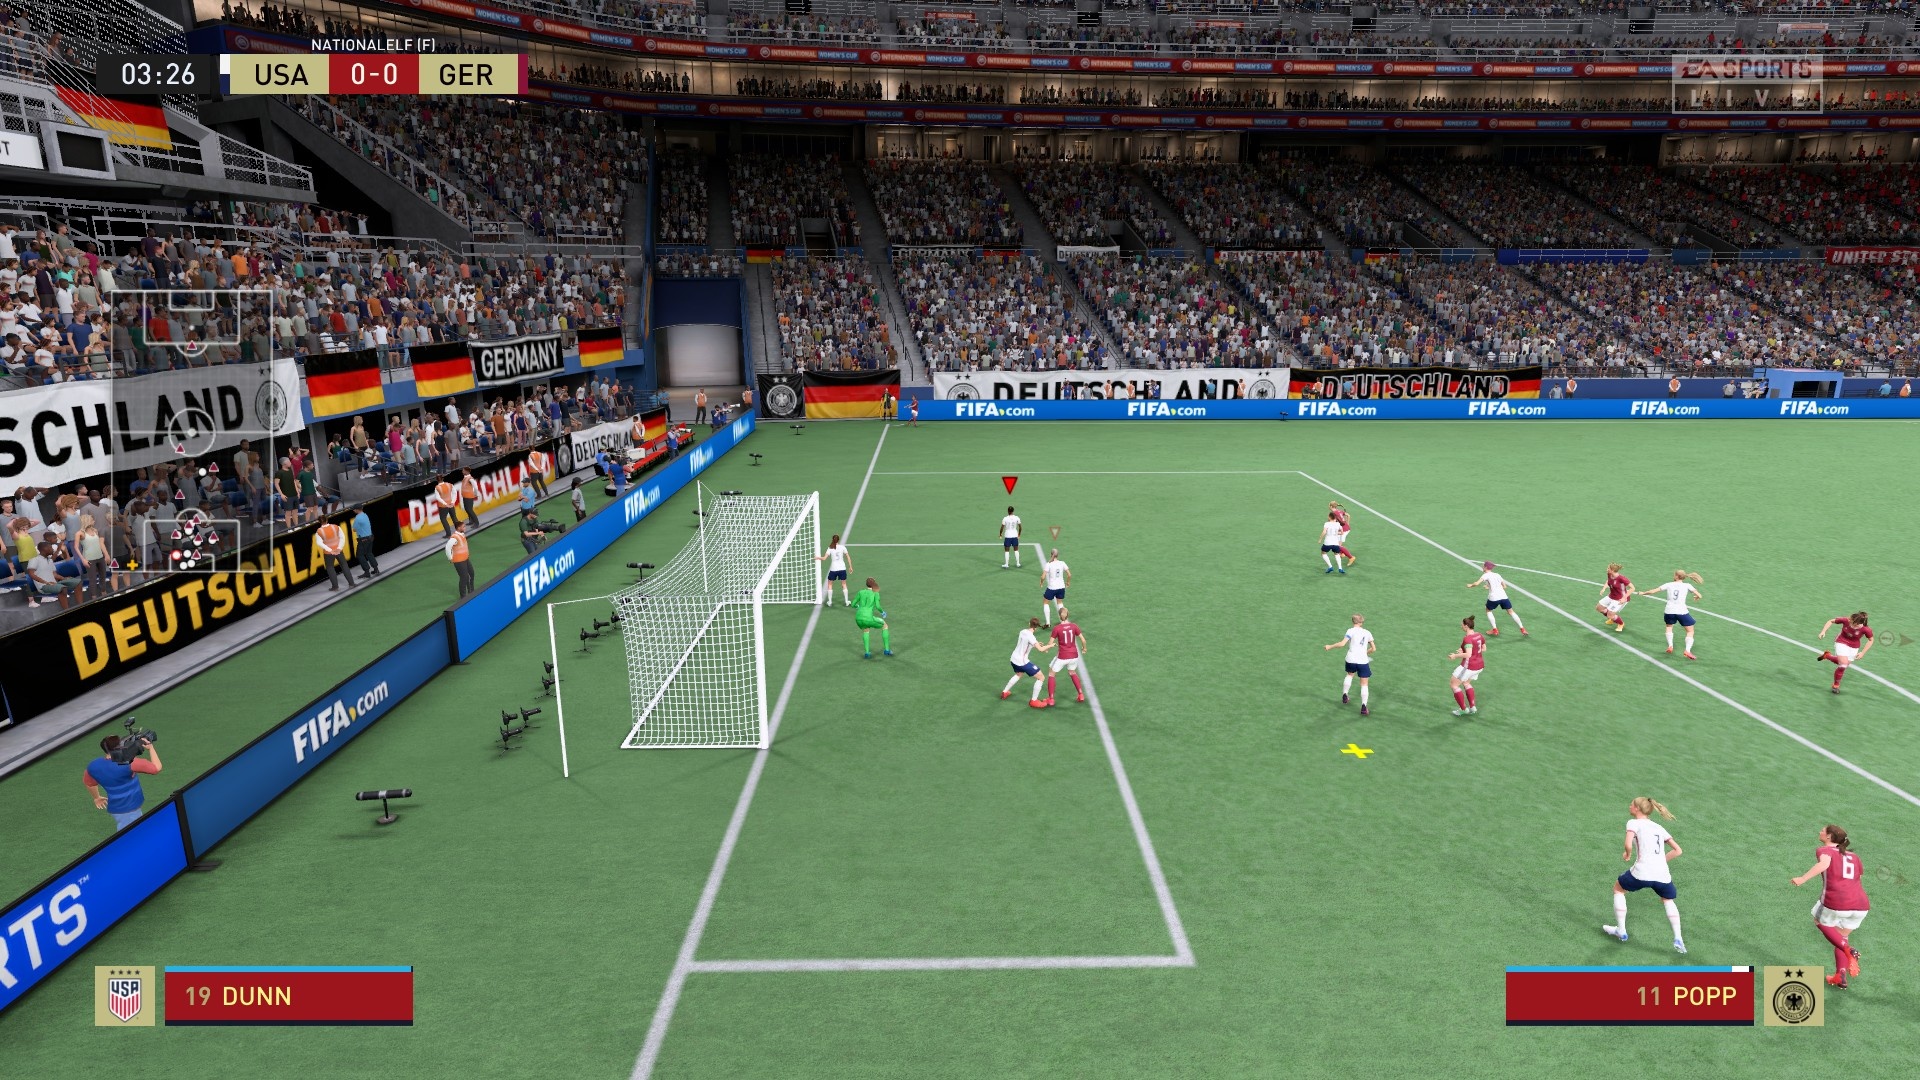 Rzut rożny: Ogólnie standardowe sytuacje całkiem nam się podobają w FIFA 22; również system rzutów wolnych jest fajny.